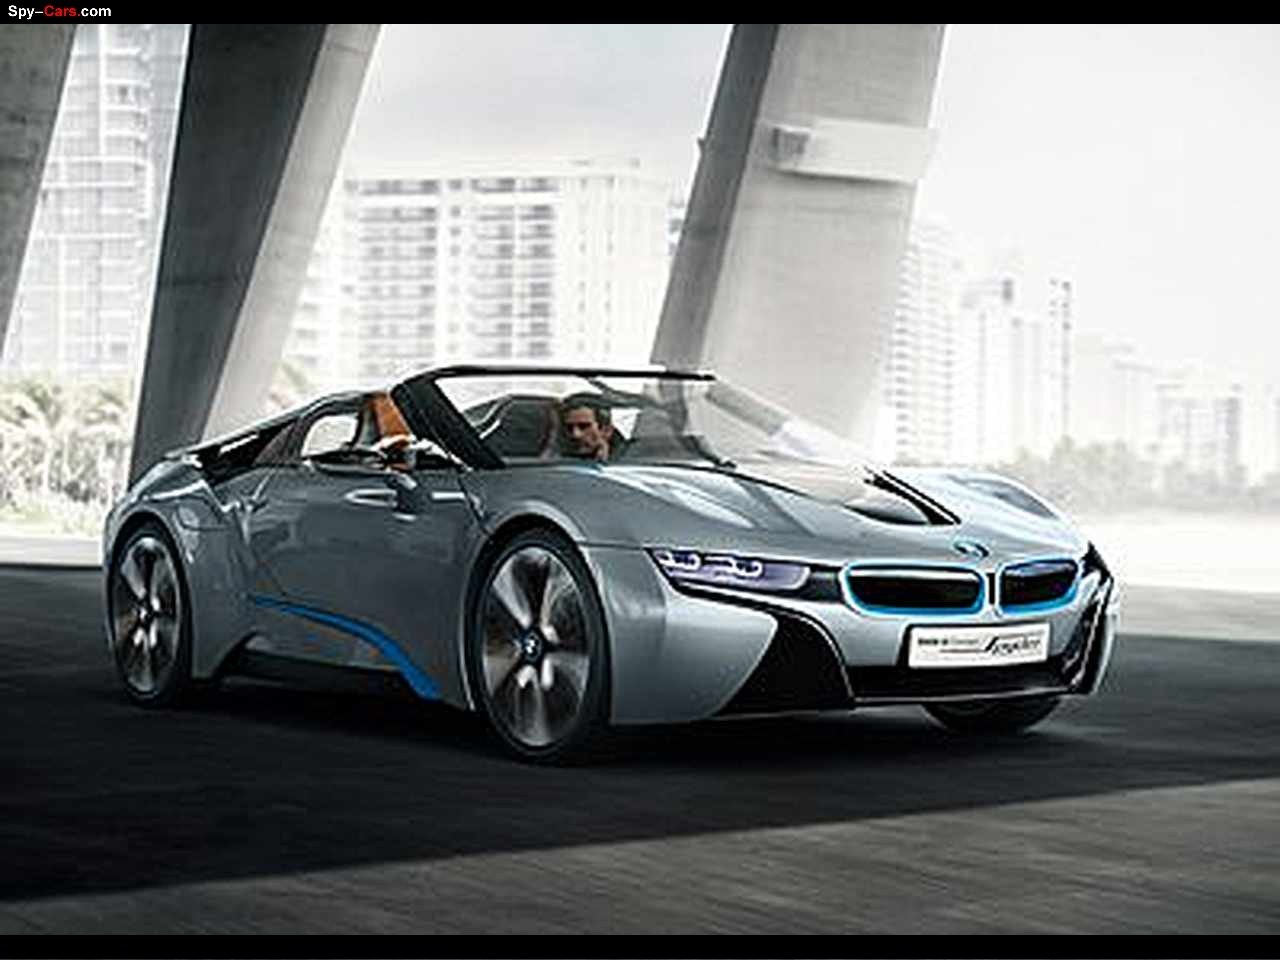 2013 BMW I8 Spyder Concept